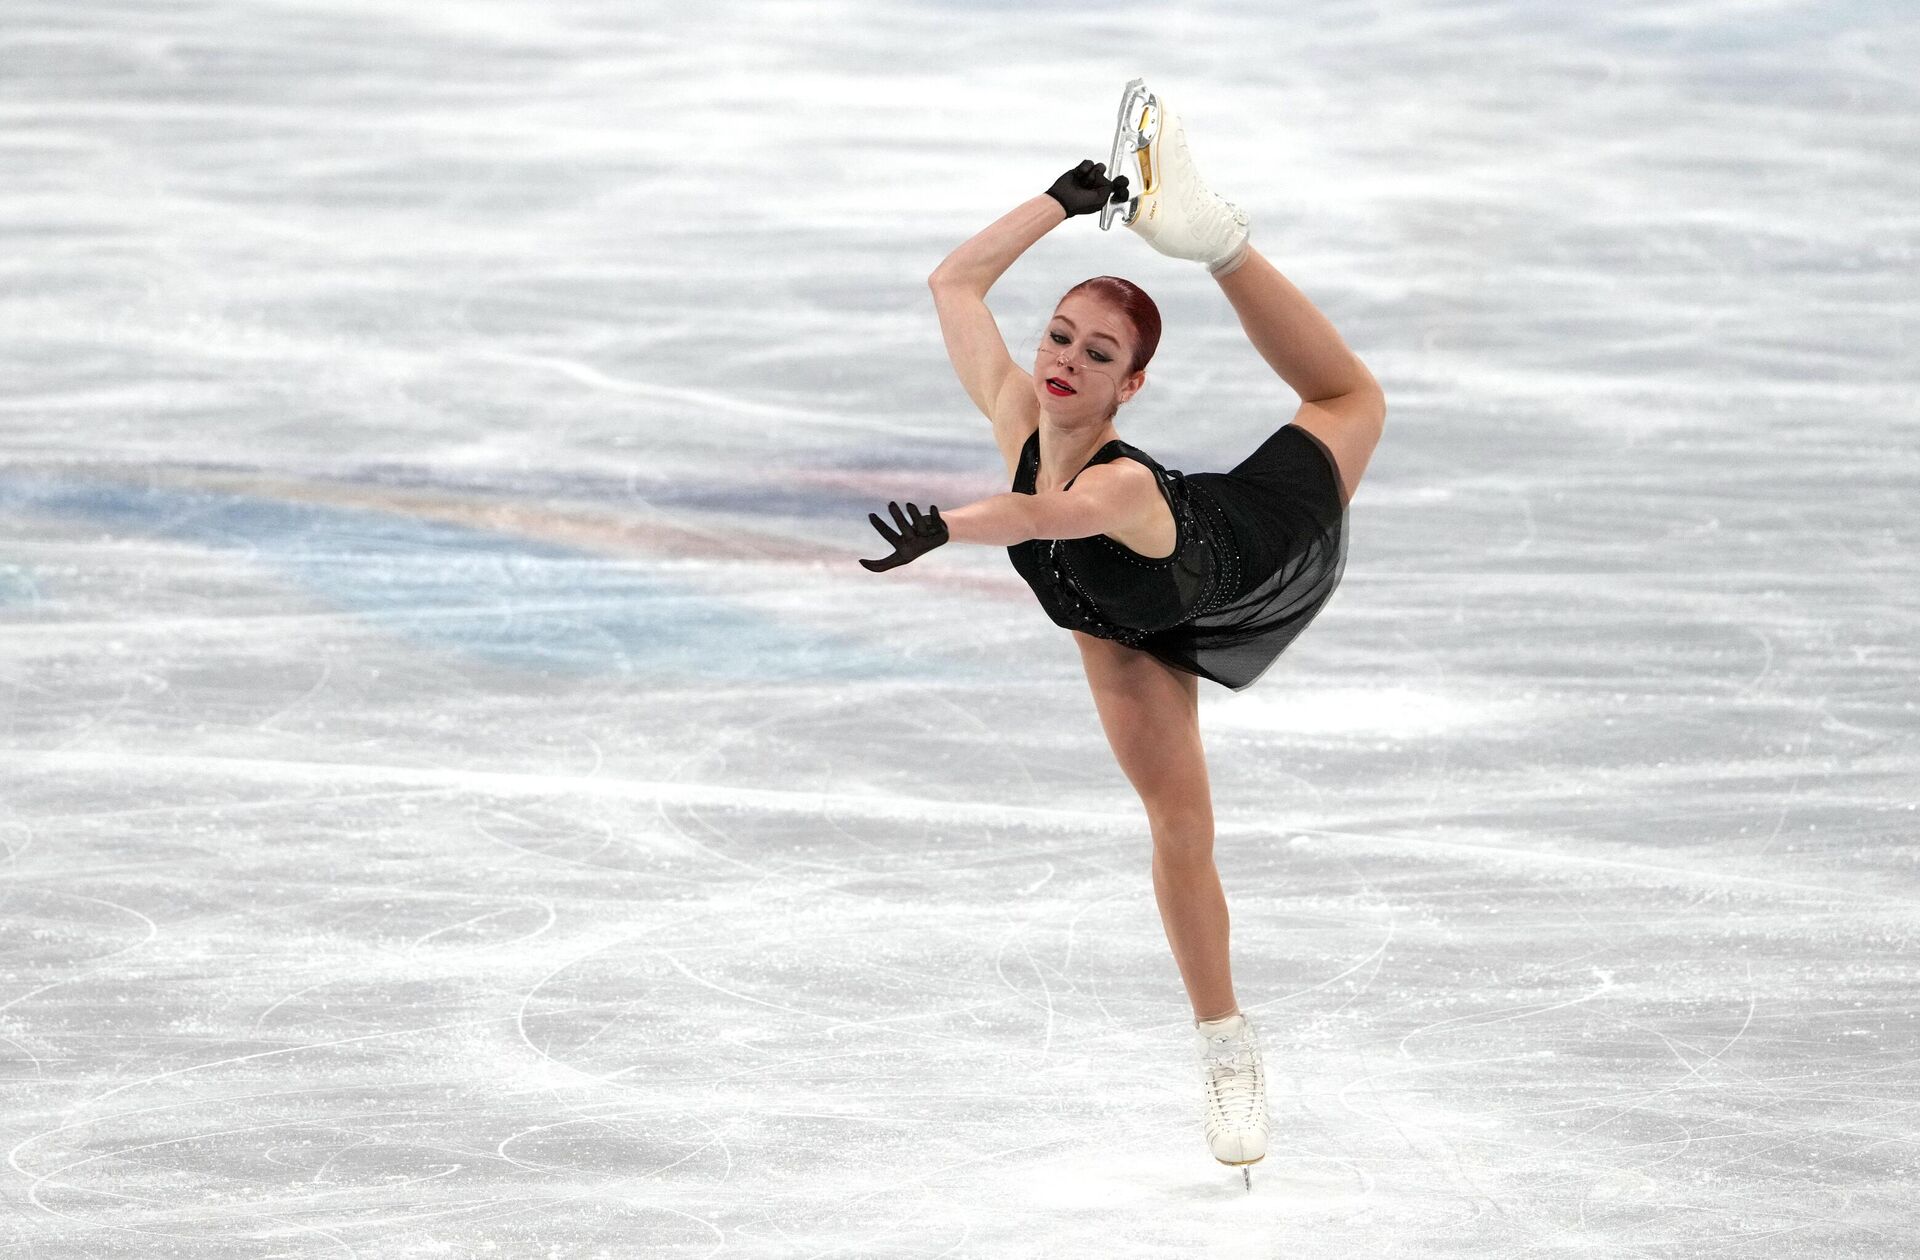 Alexandre Trusova après le programme libre féminin des épreuves de patinage artistique, aux Jeux olympiques de Pékin, le 17 février 2022 - Sputnik Afrique, 1920, 17.02.2022